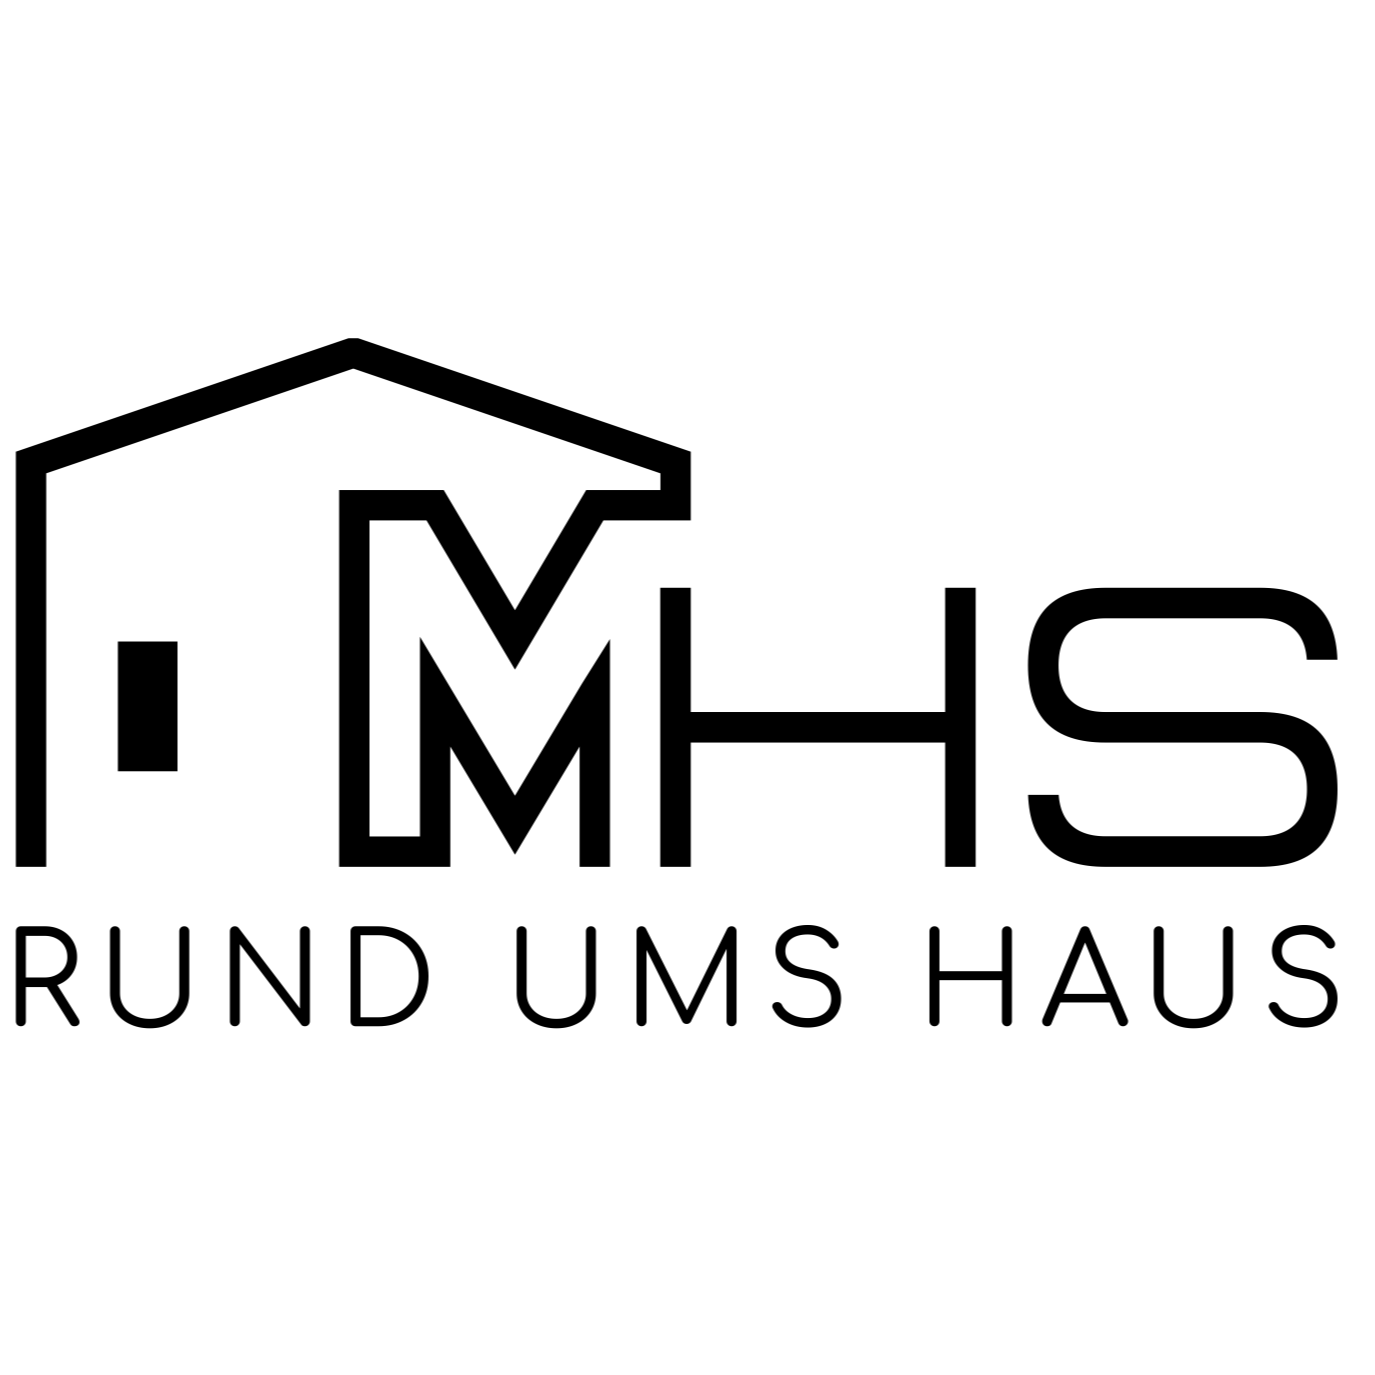 Logo von M.H.S RUND UMS HAUS